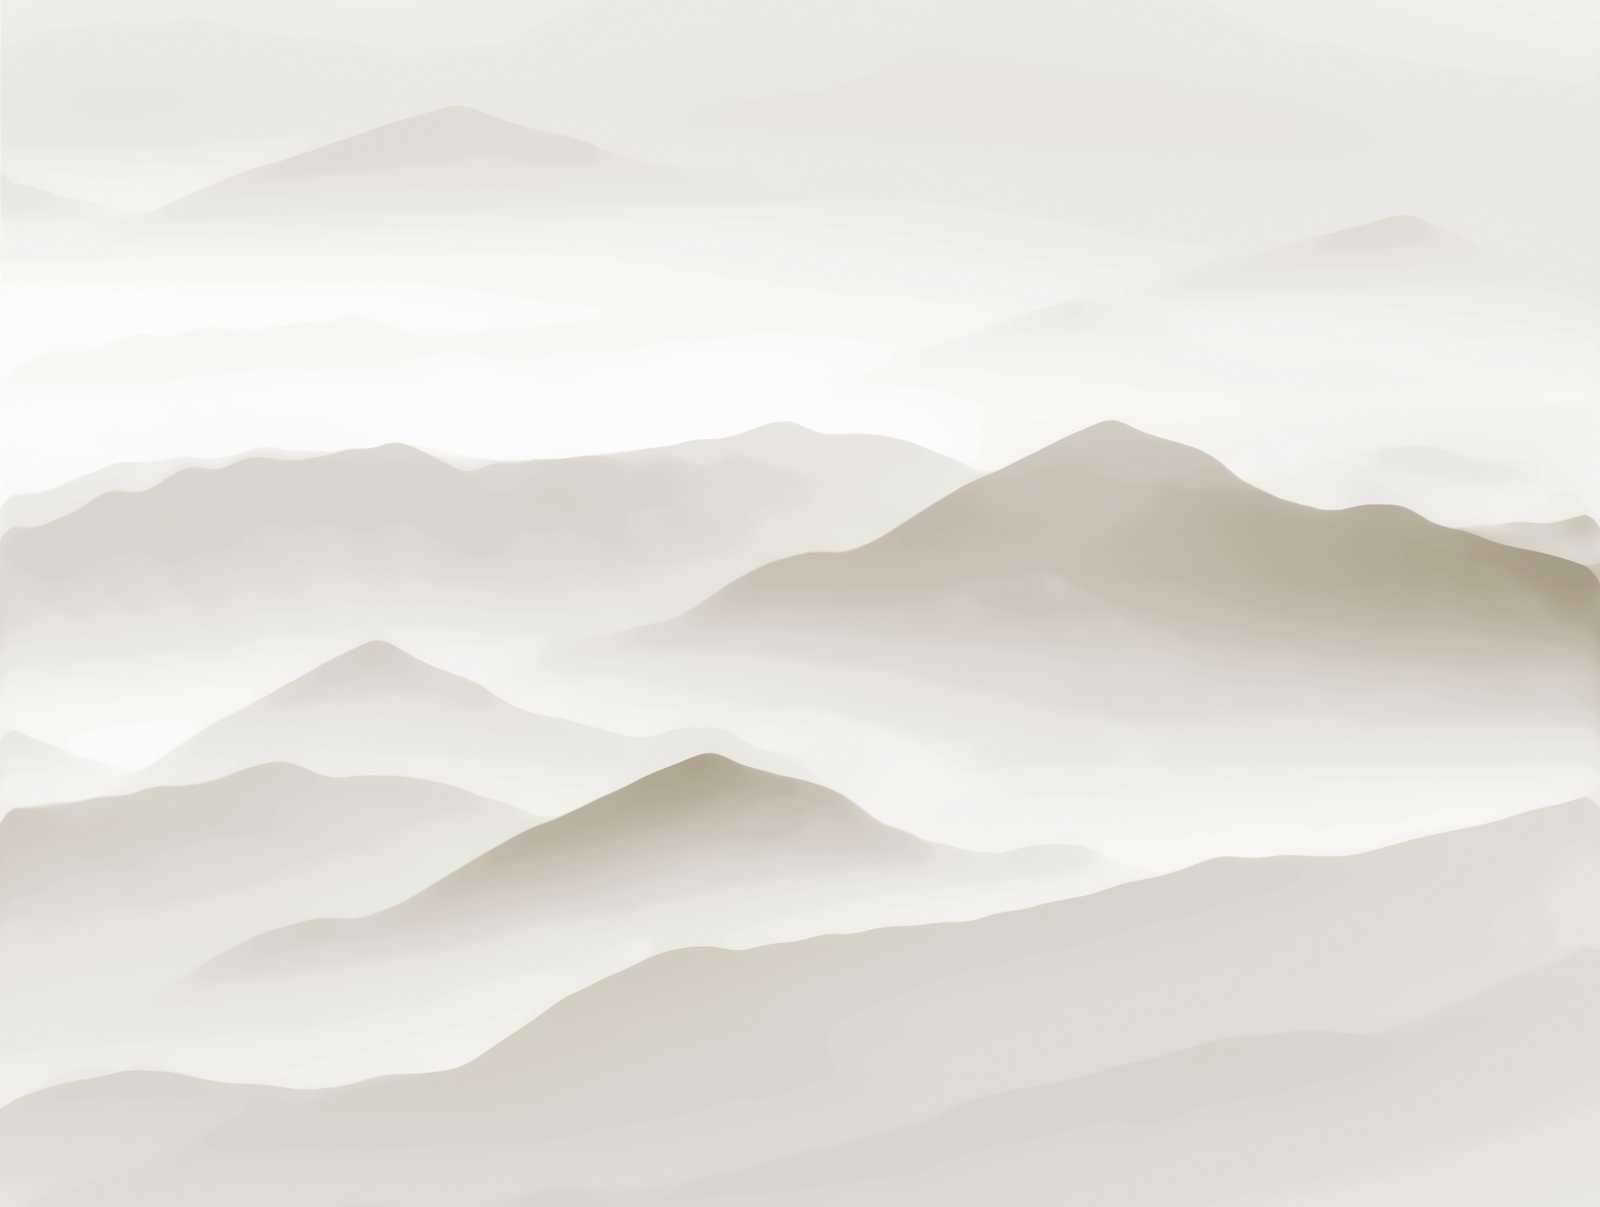             Nouveauté papier peint - papier peint à motifs Greige avec design de dunes
        